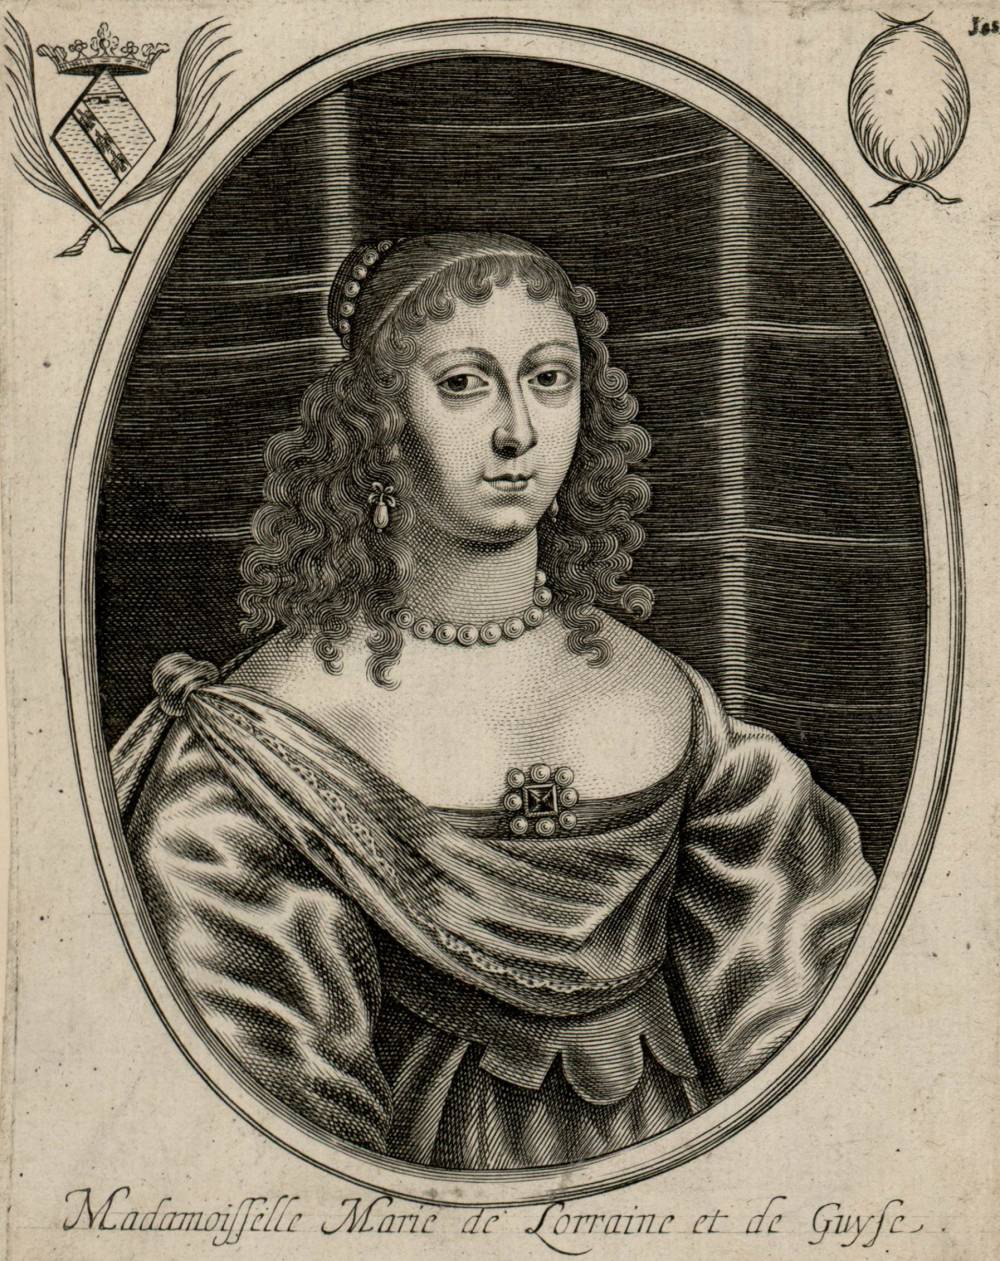 MARIE DE LORRAINE (1615-1688), KNOWN AS MADEMOISELLE DE GUISE